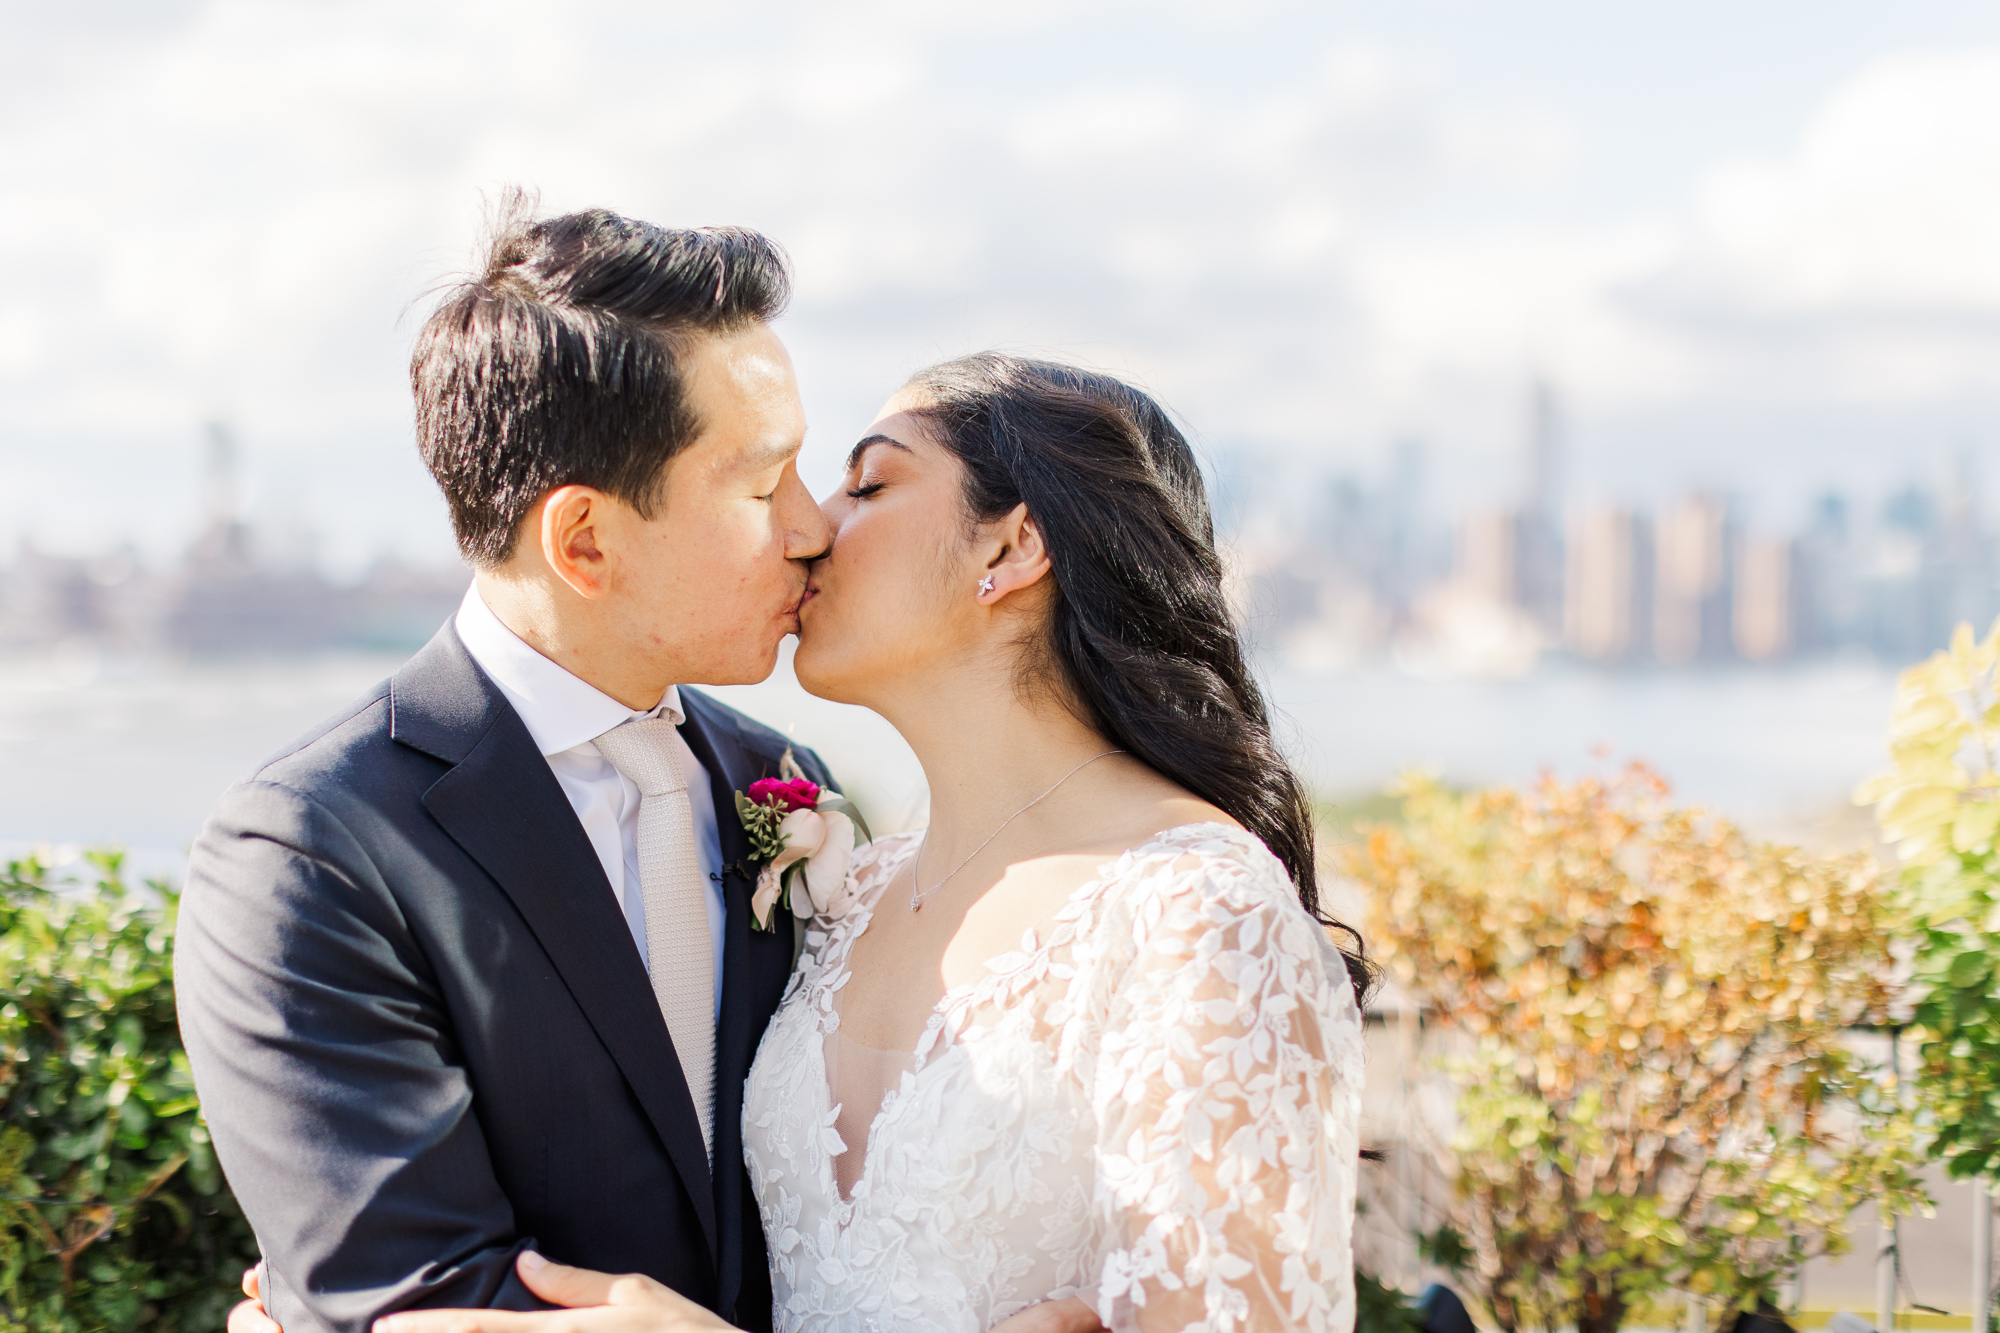 Elegant Hotels to Get Wedding-Ready in Brooklyn, New York